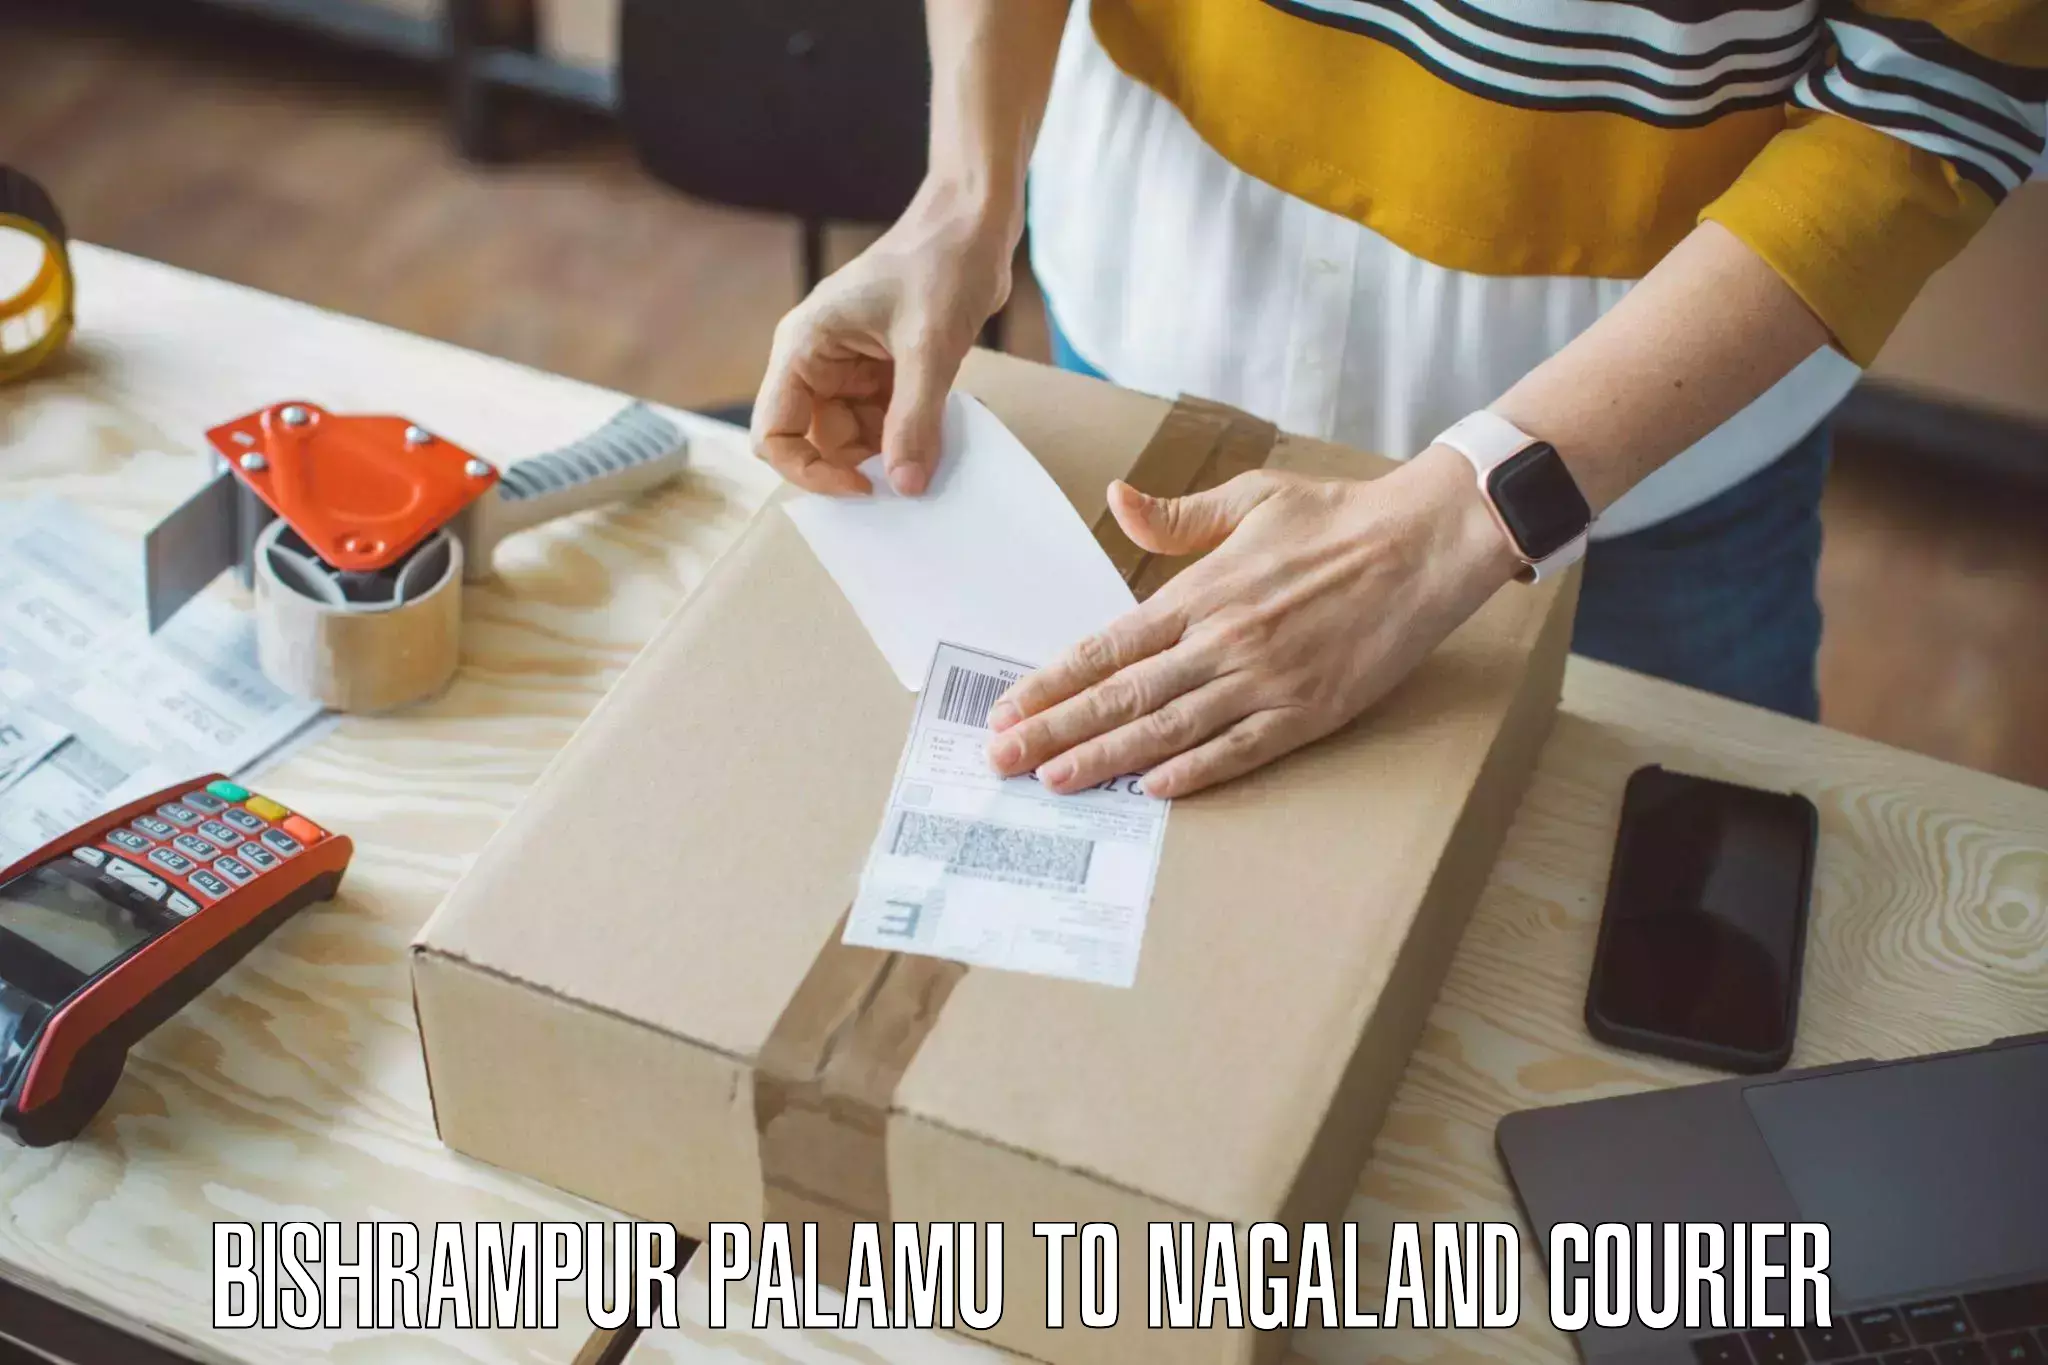 Furniture moving experts Bishrampur Palamu to NIT Nagaland